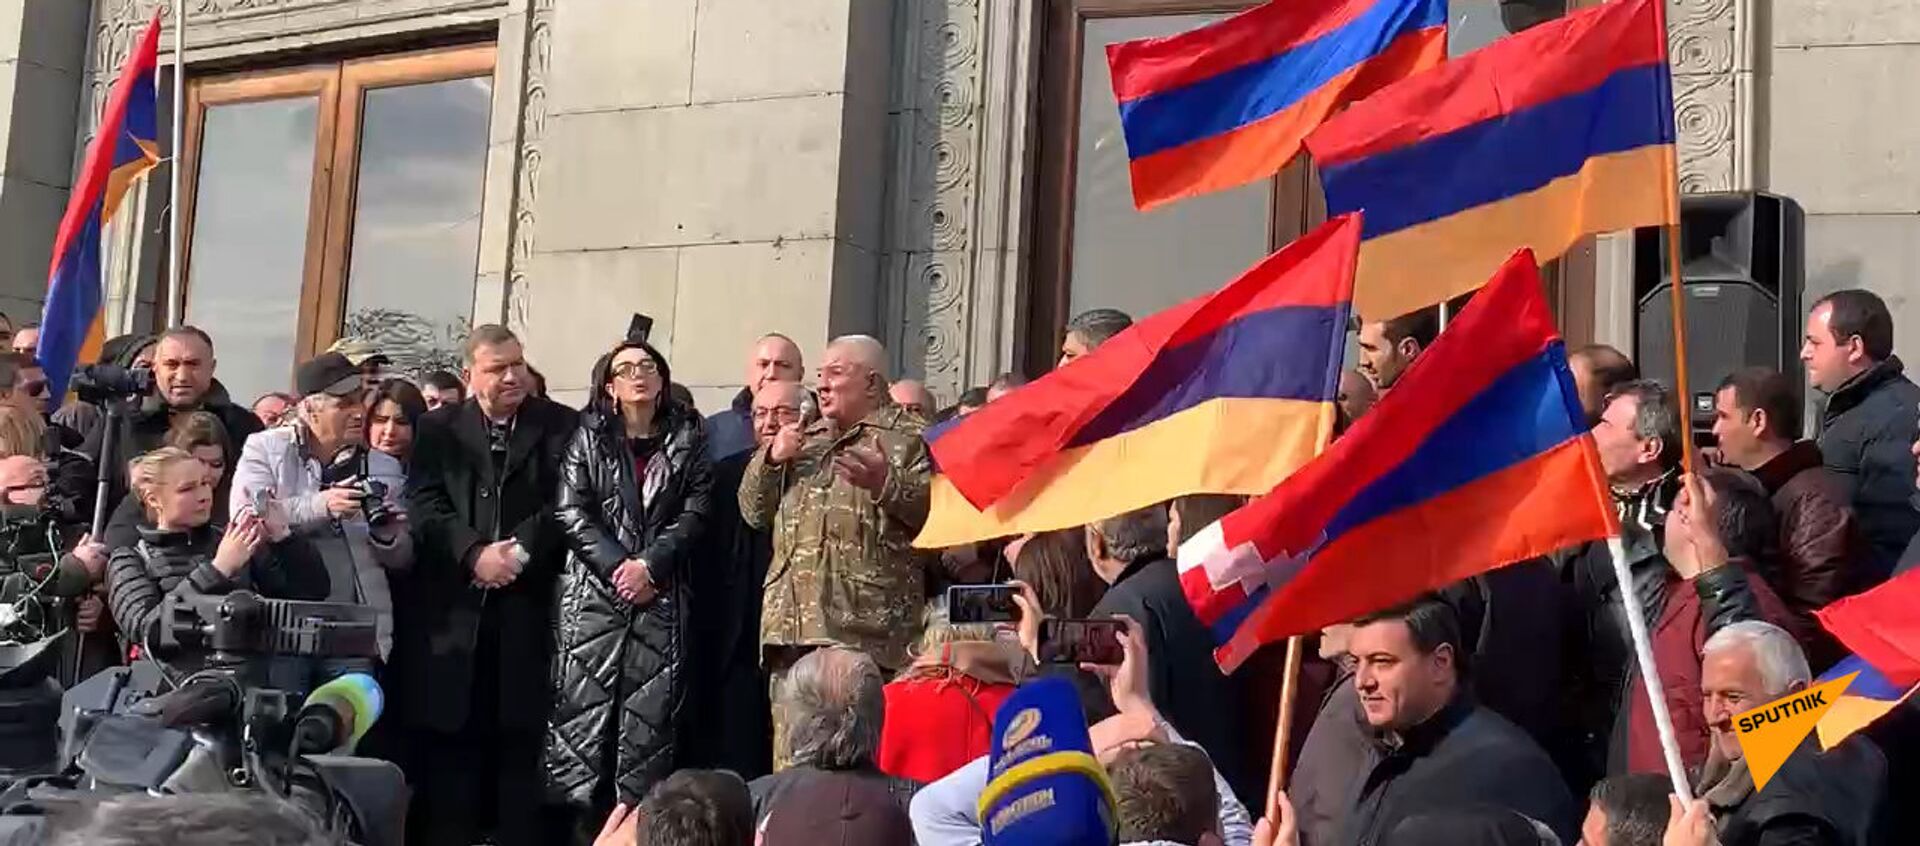 «Մեր անունն է հայկական բանակ». Ազատության հրապարակը մարդաշատ է - Sputnik Армения, 1920, 25.02.2021